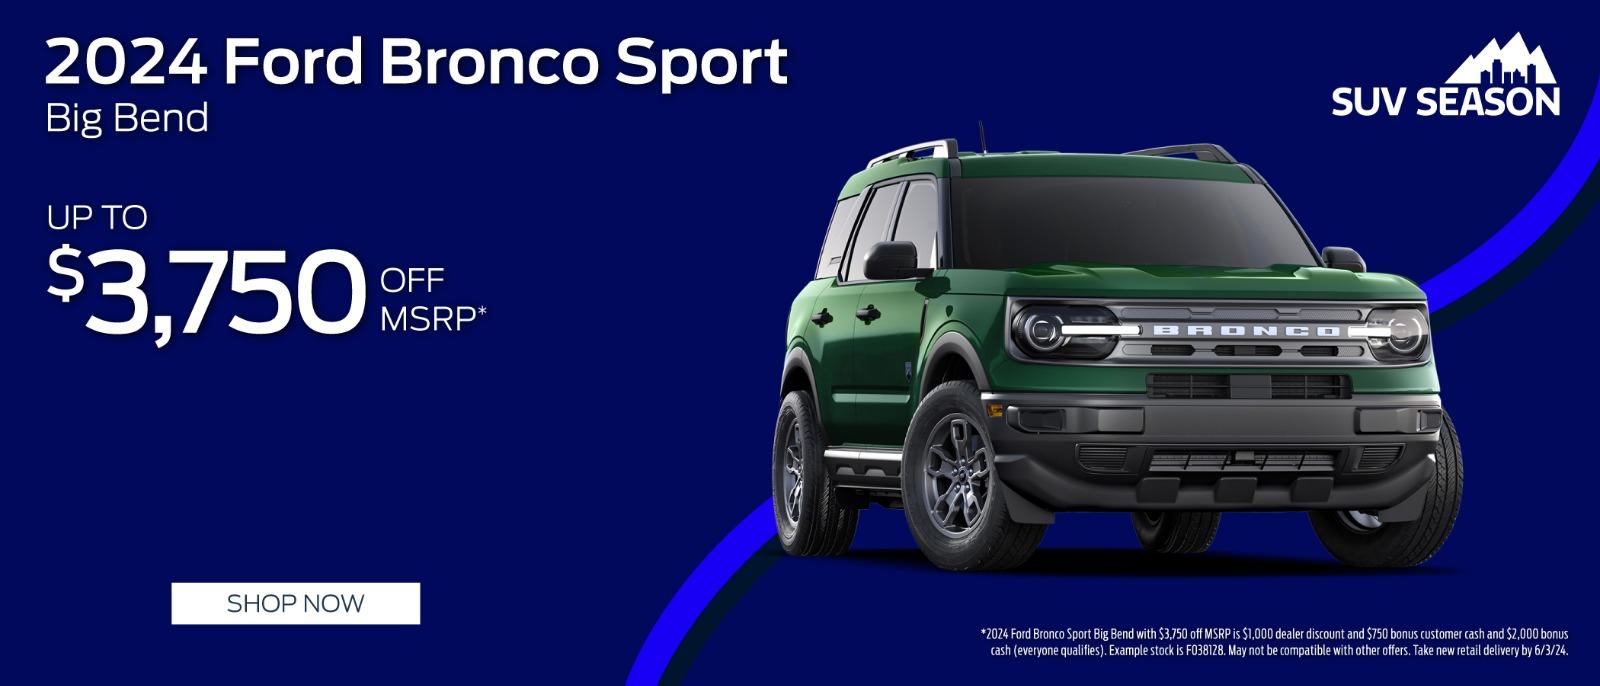 2024 Ford Bronco Sport $3,750 Off MSRP